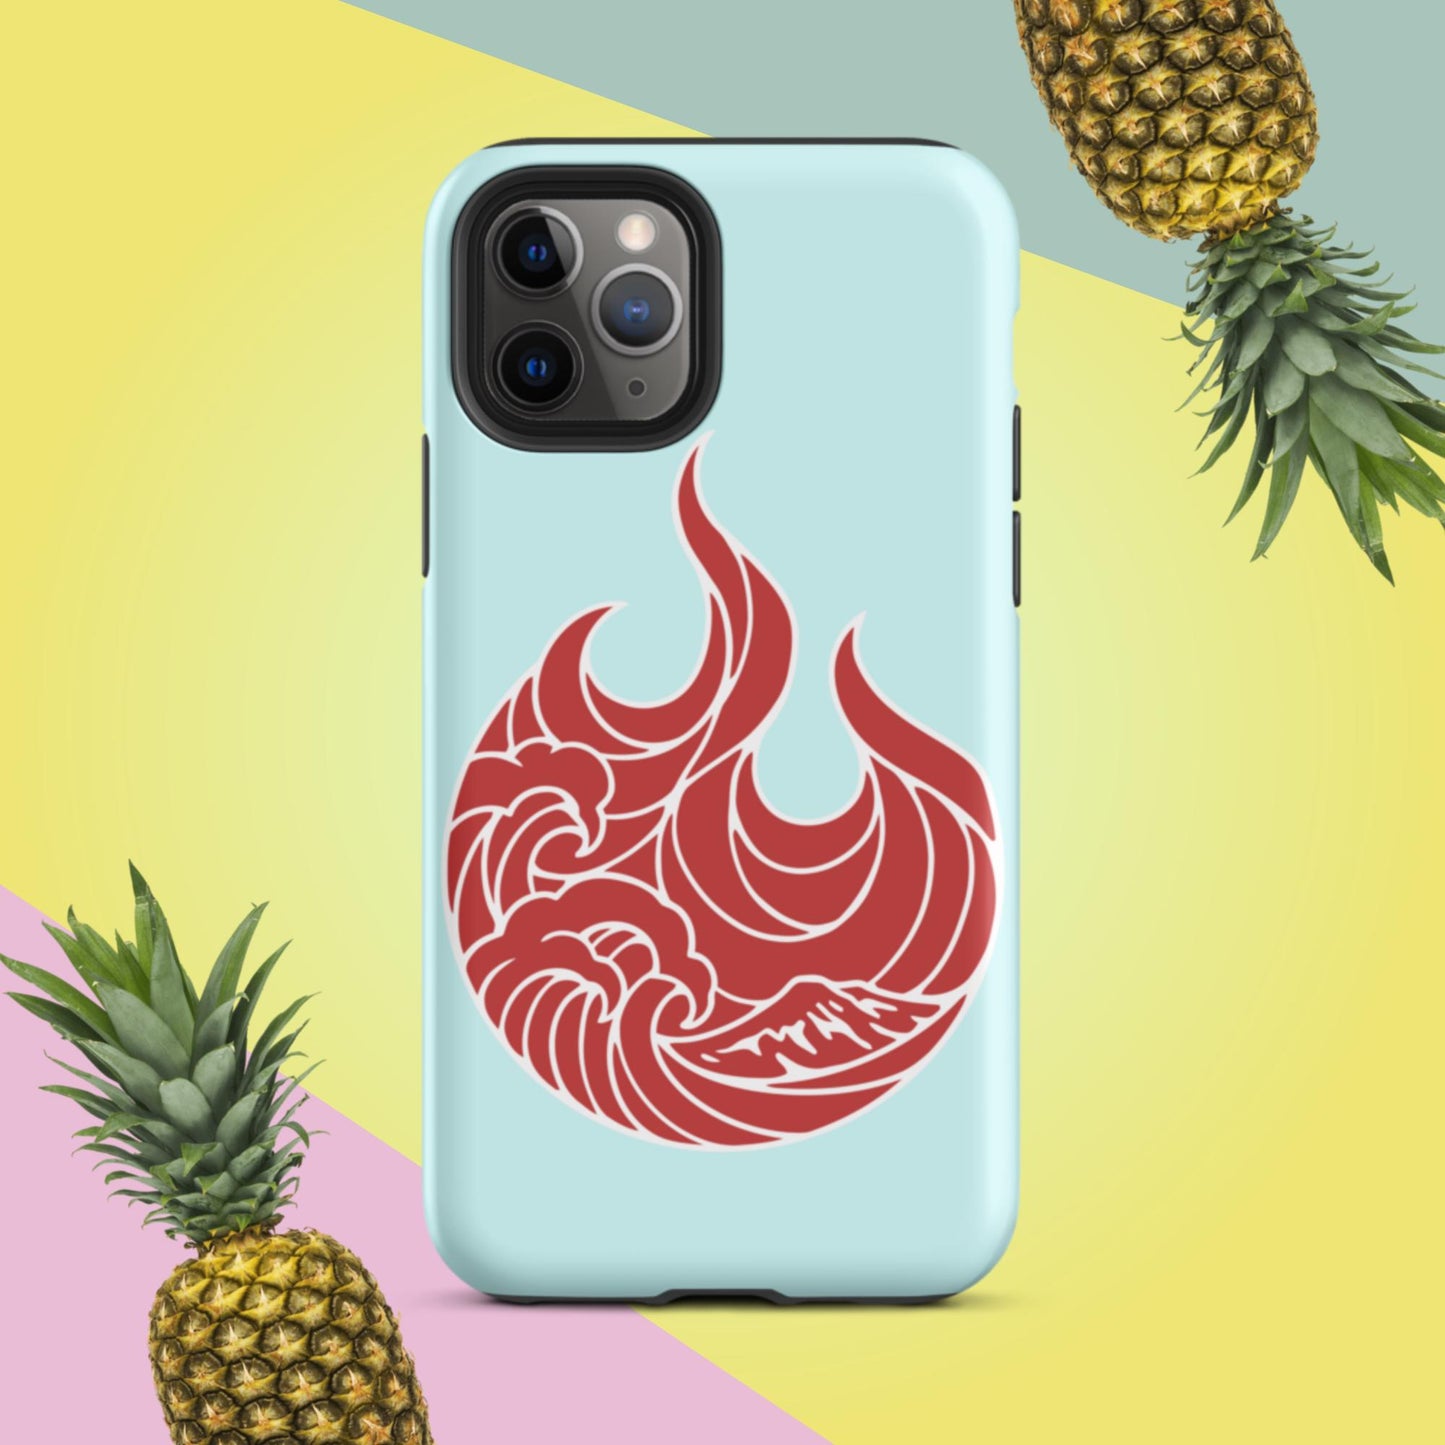 Big Fire Tough iPhone case